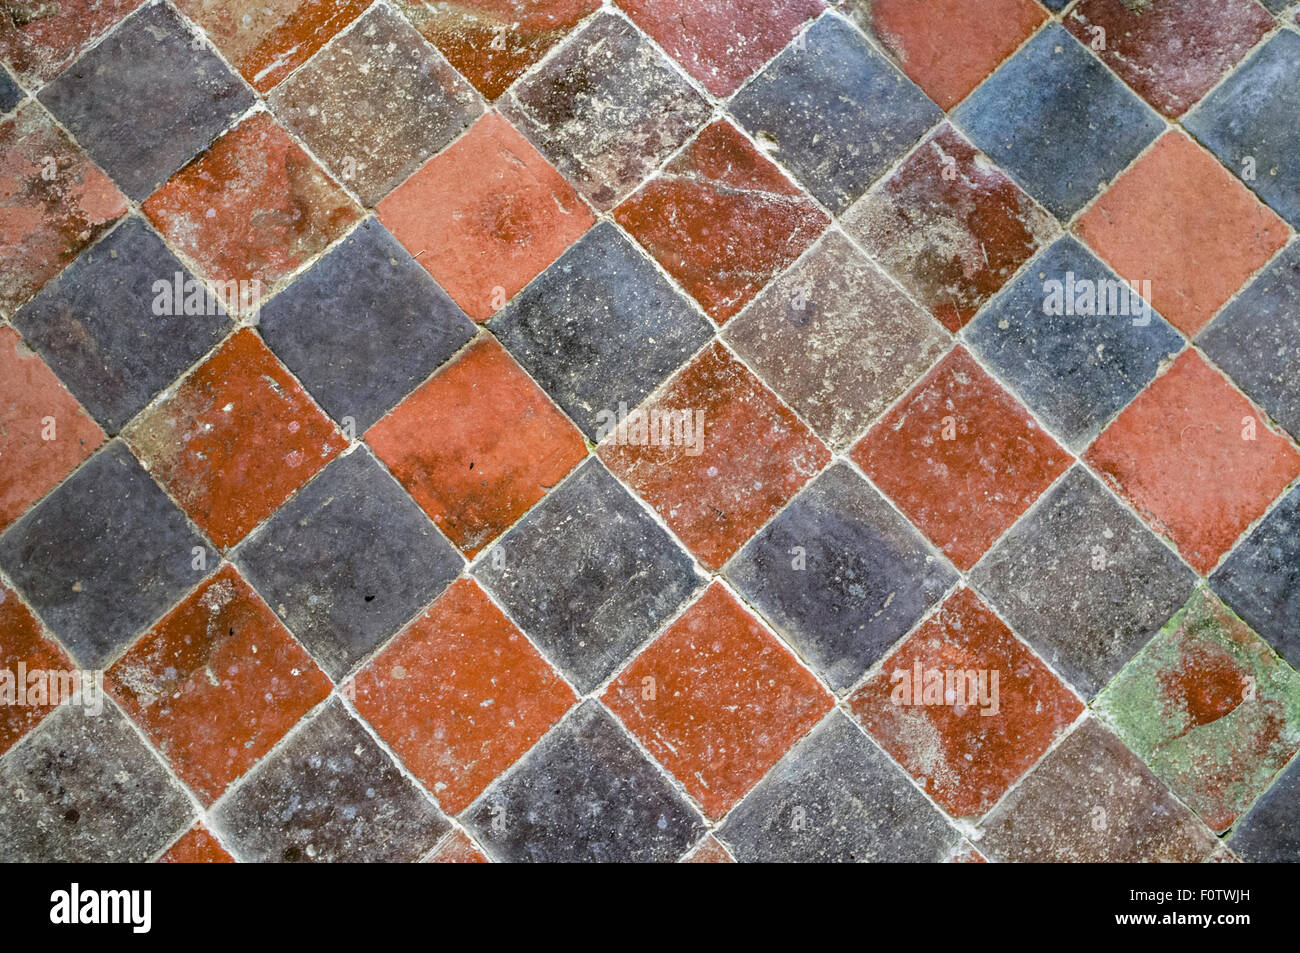 Old diamond floor tiles Stock Photo